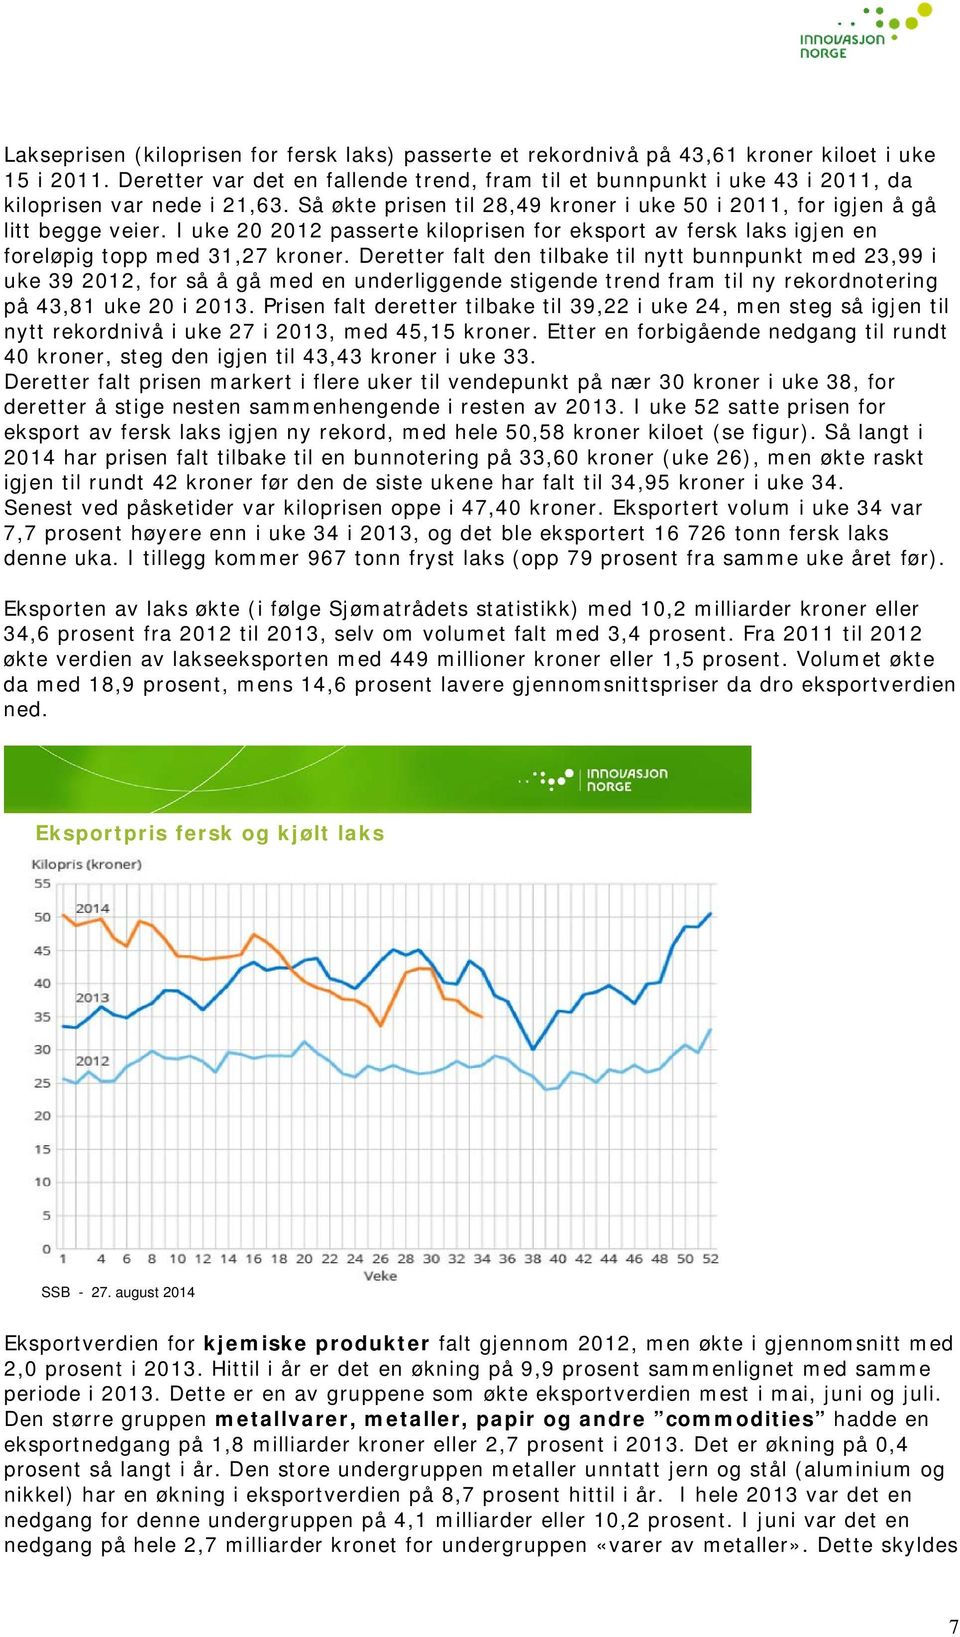 I uke 20 2012 passerte kiloprisen for eksport av fersk laks igjen en foreløpig topp med 31,27 kroner.